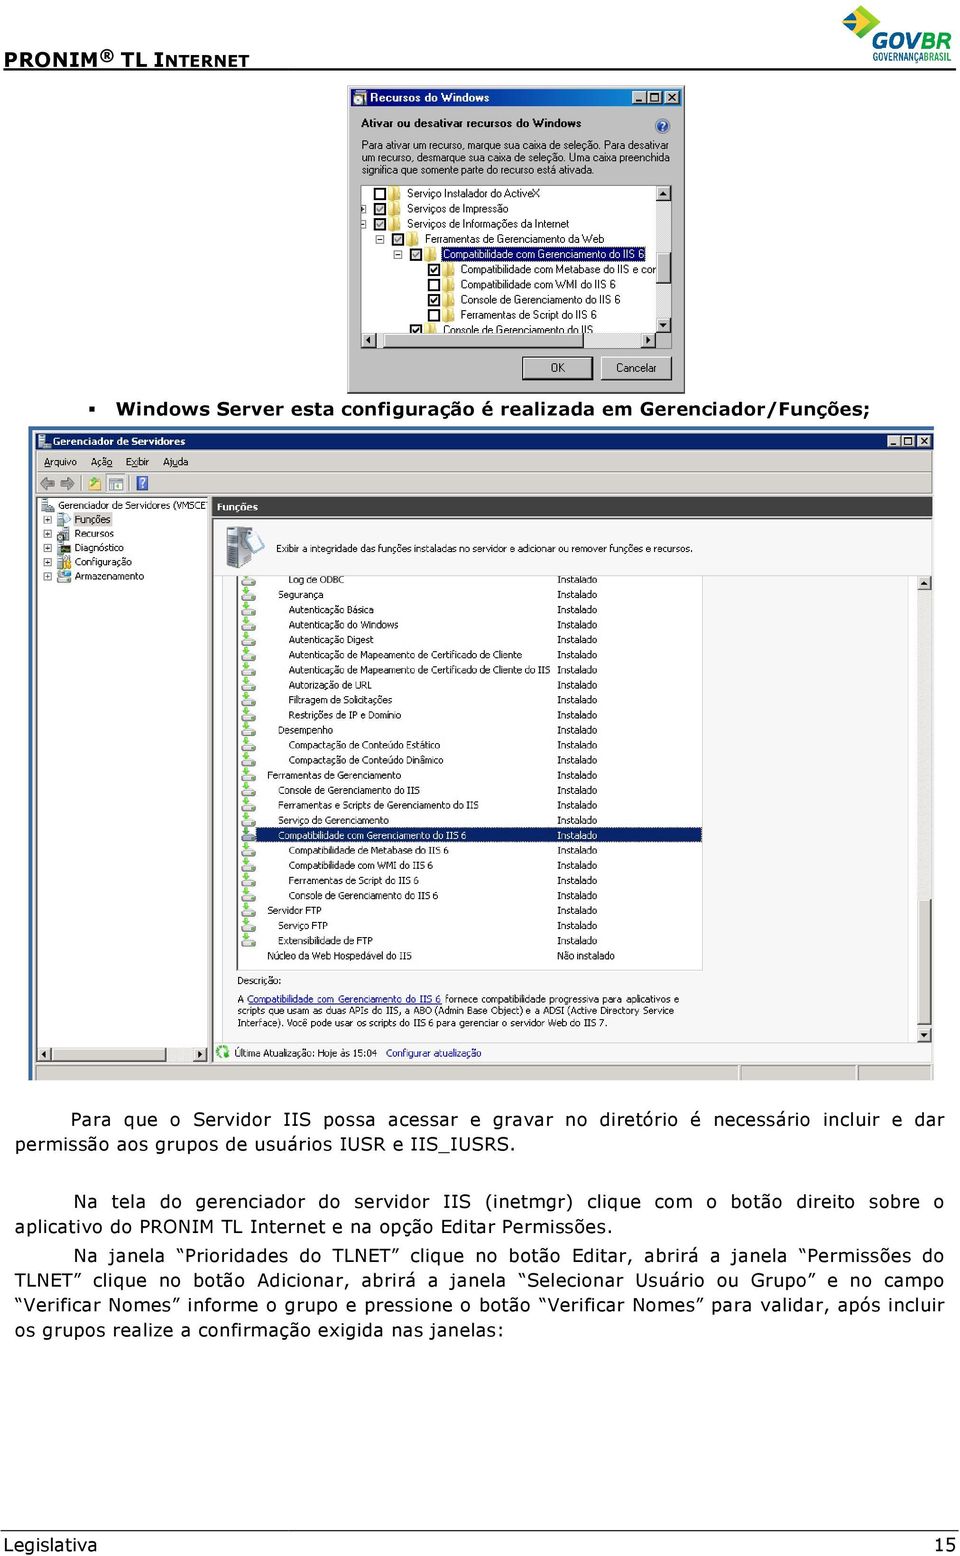 Na tela do gerenciador do servidor IIS (inetmgr) clique com o botão direito sobre o aplicativo do PRONIM TL Internet e na opção Editar Permissões.